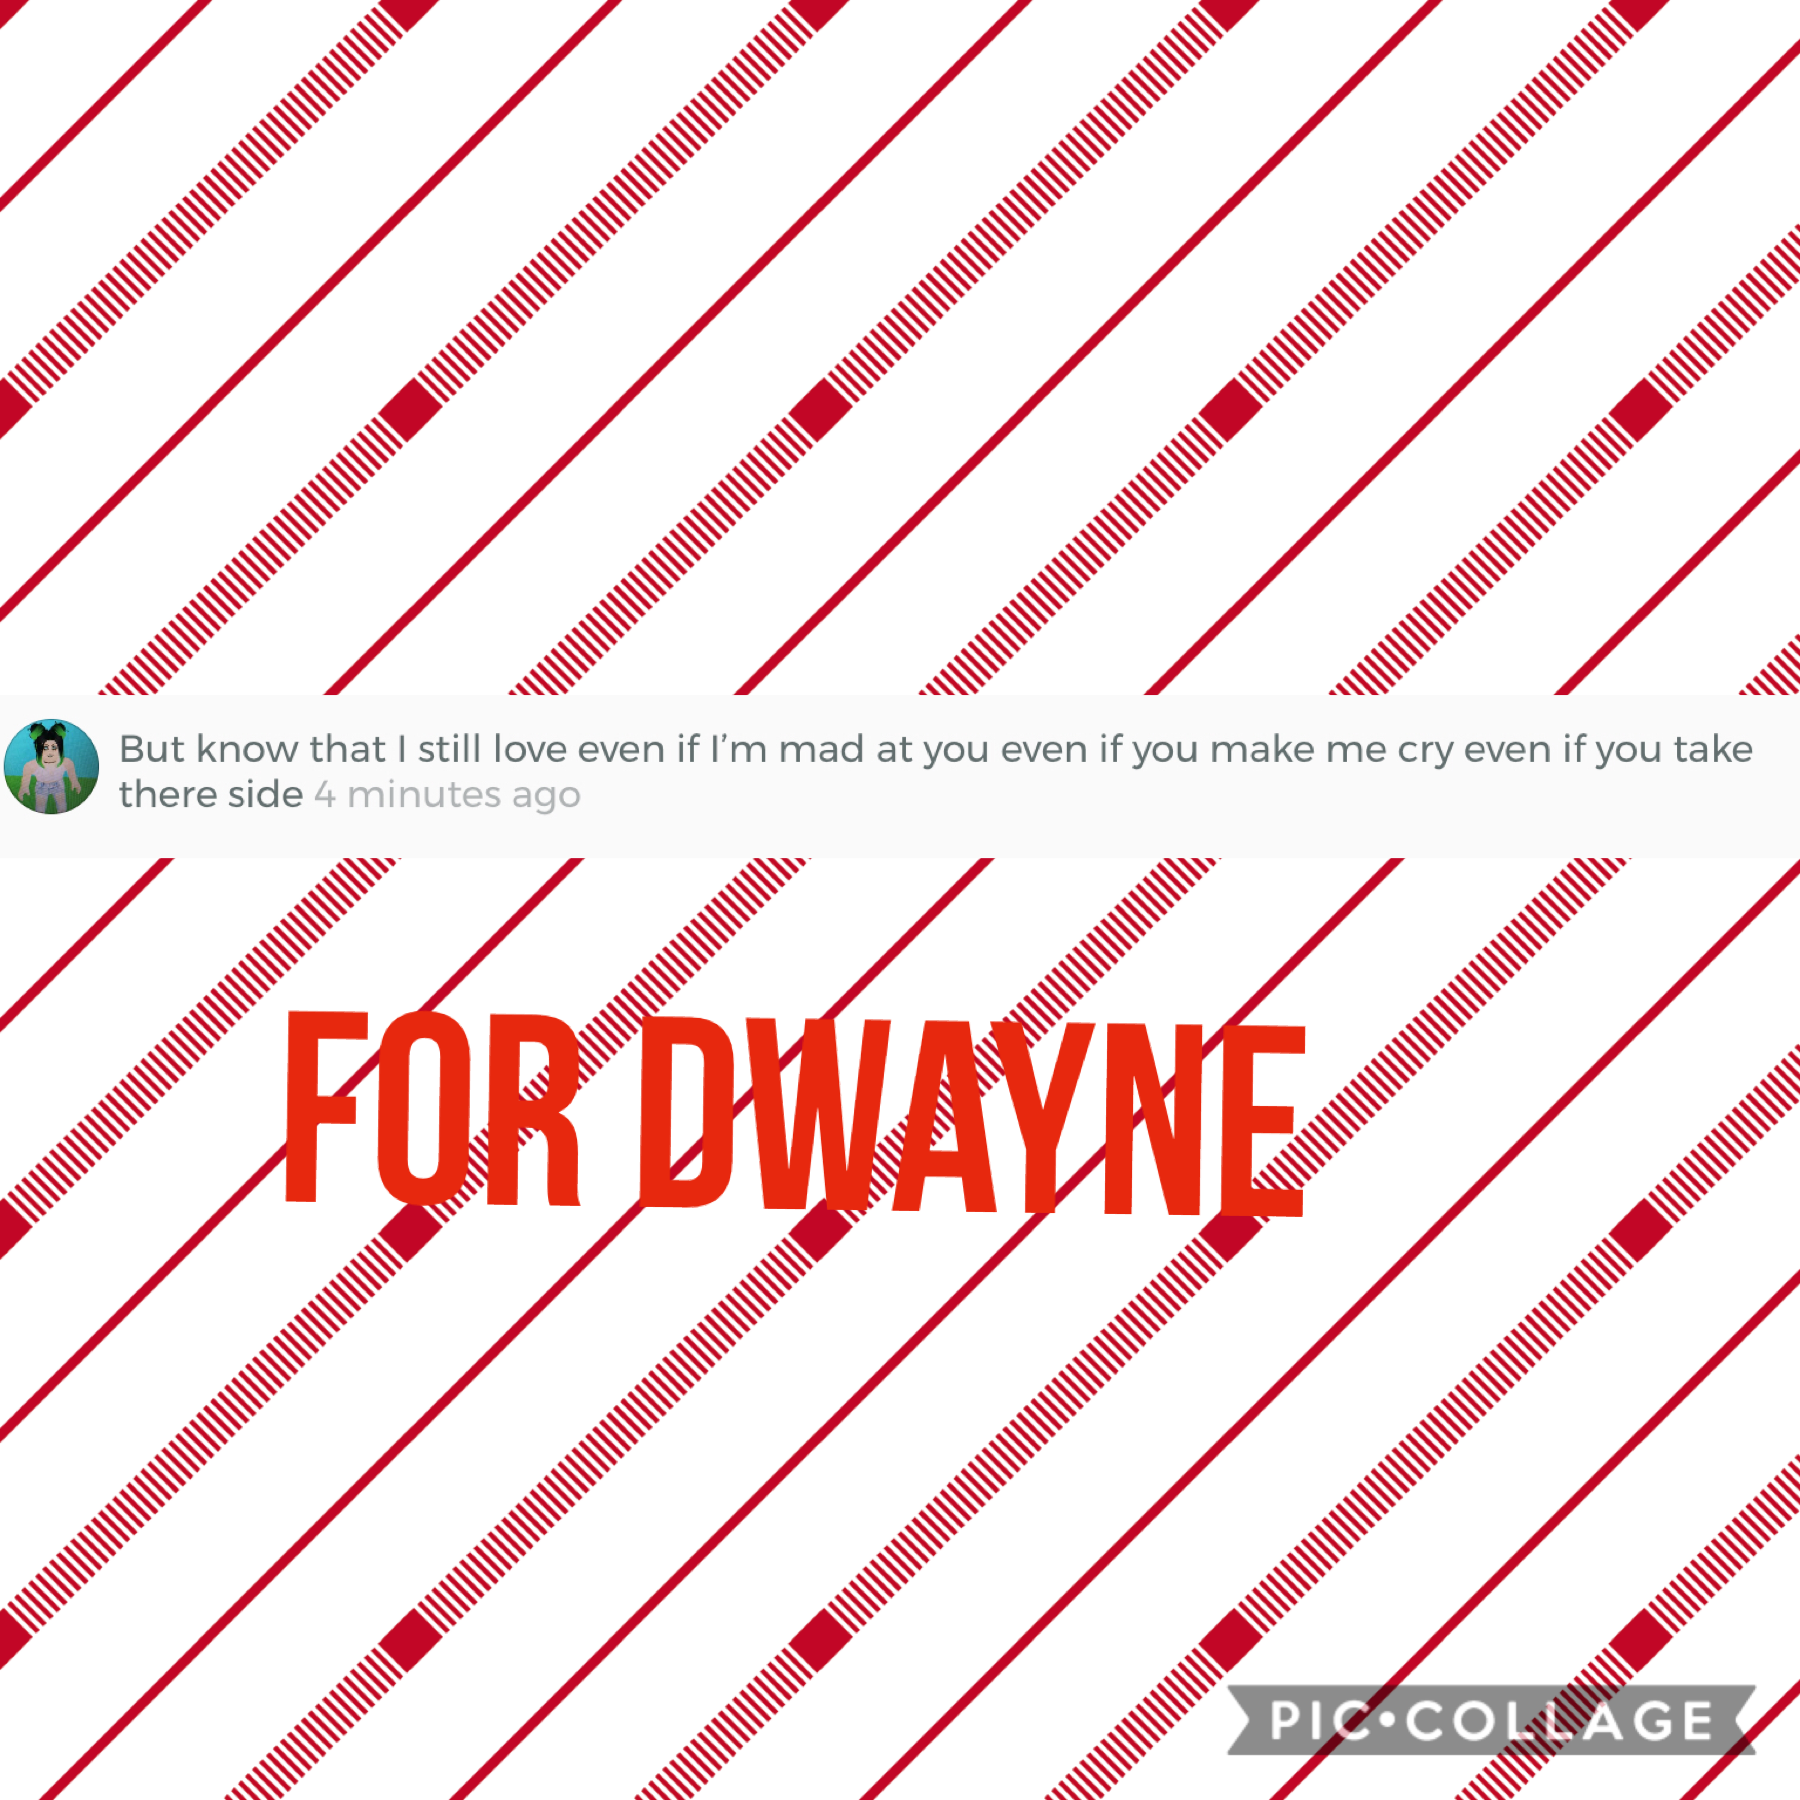 For Dwayne